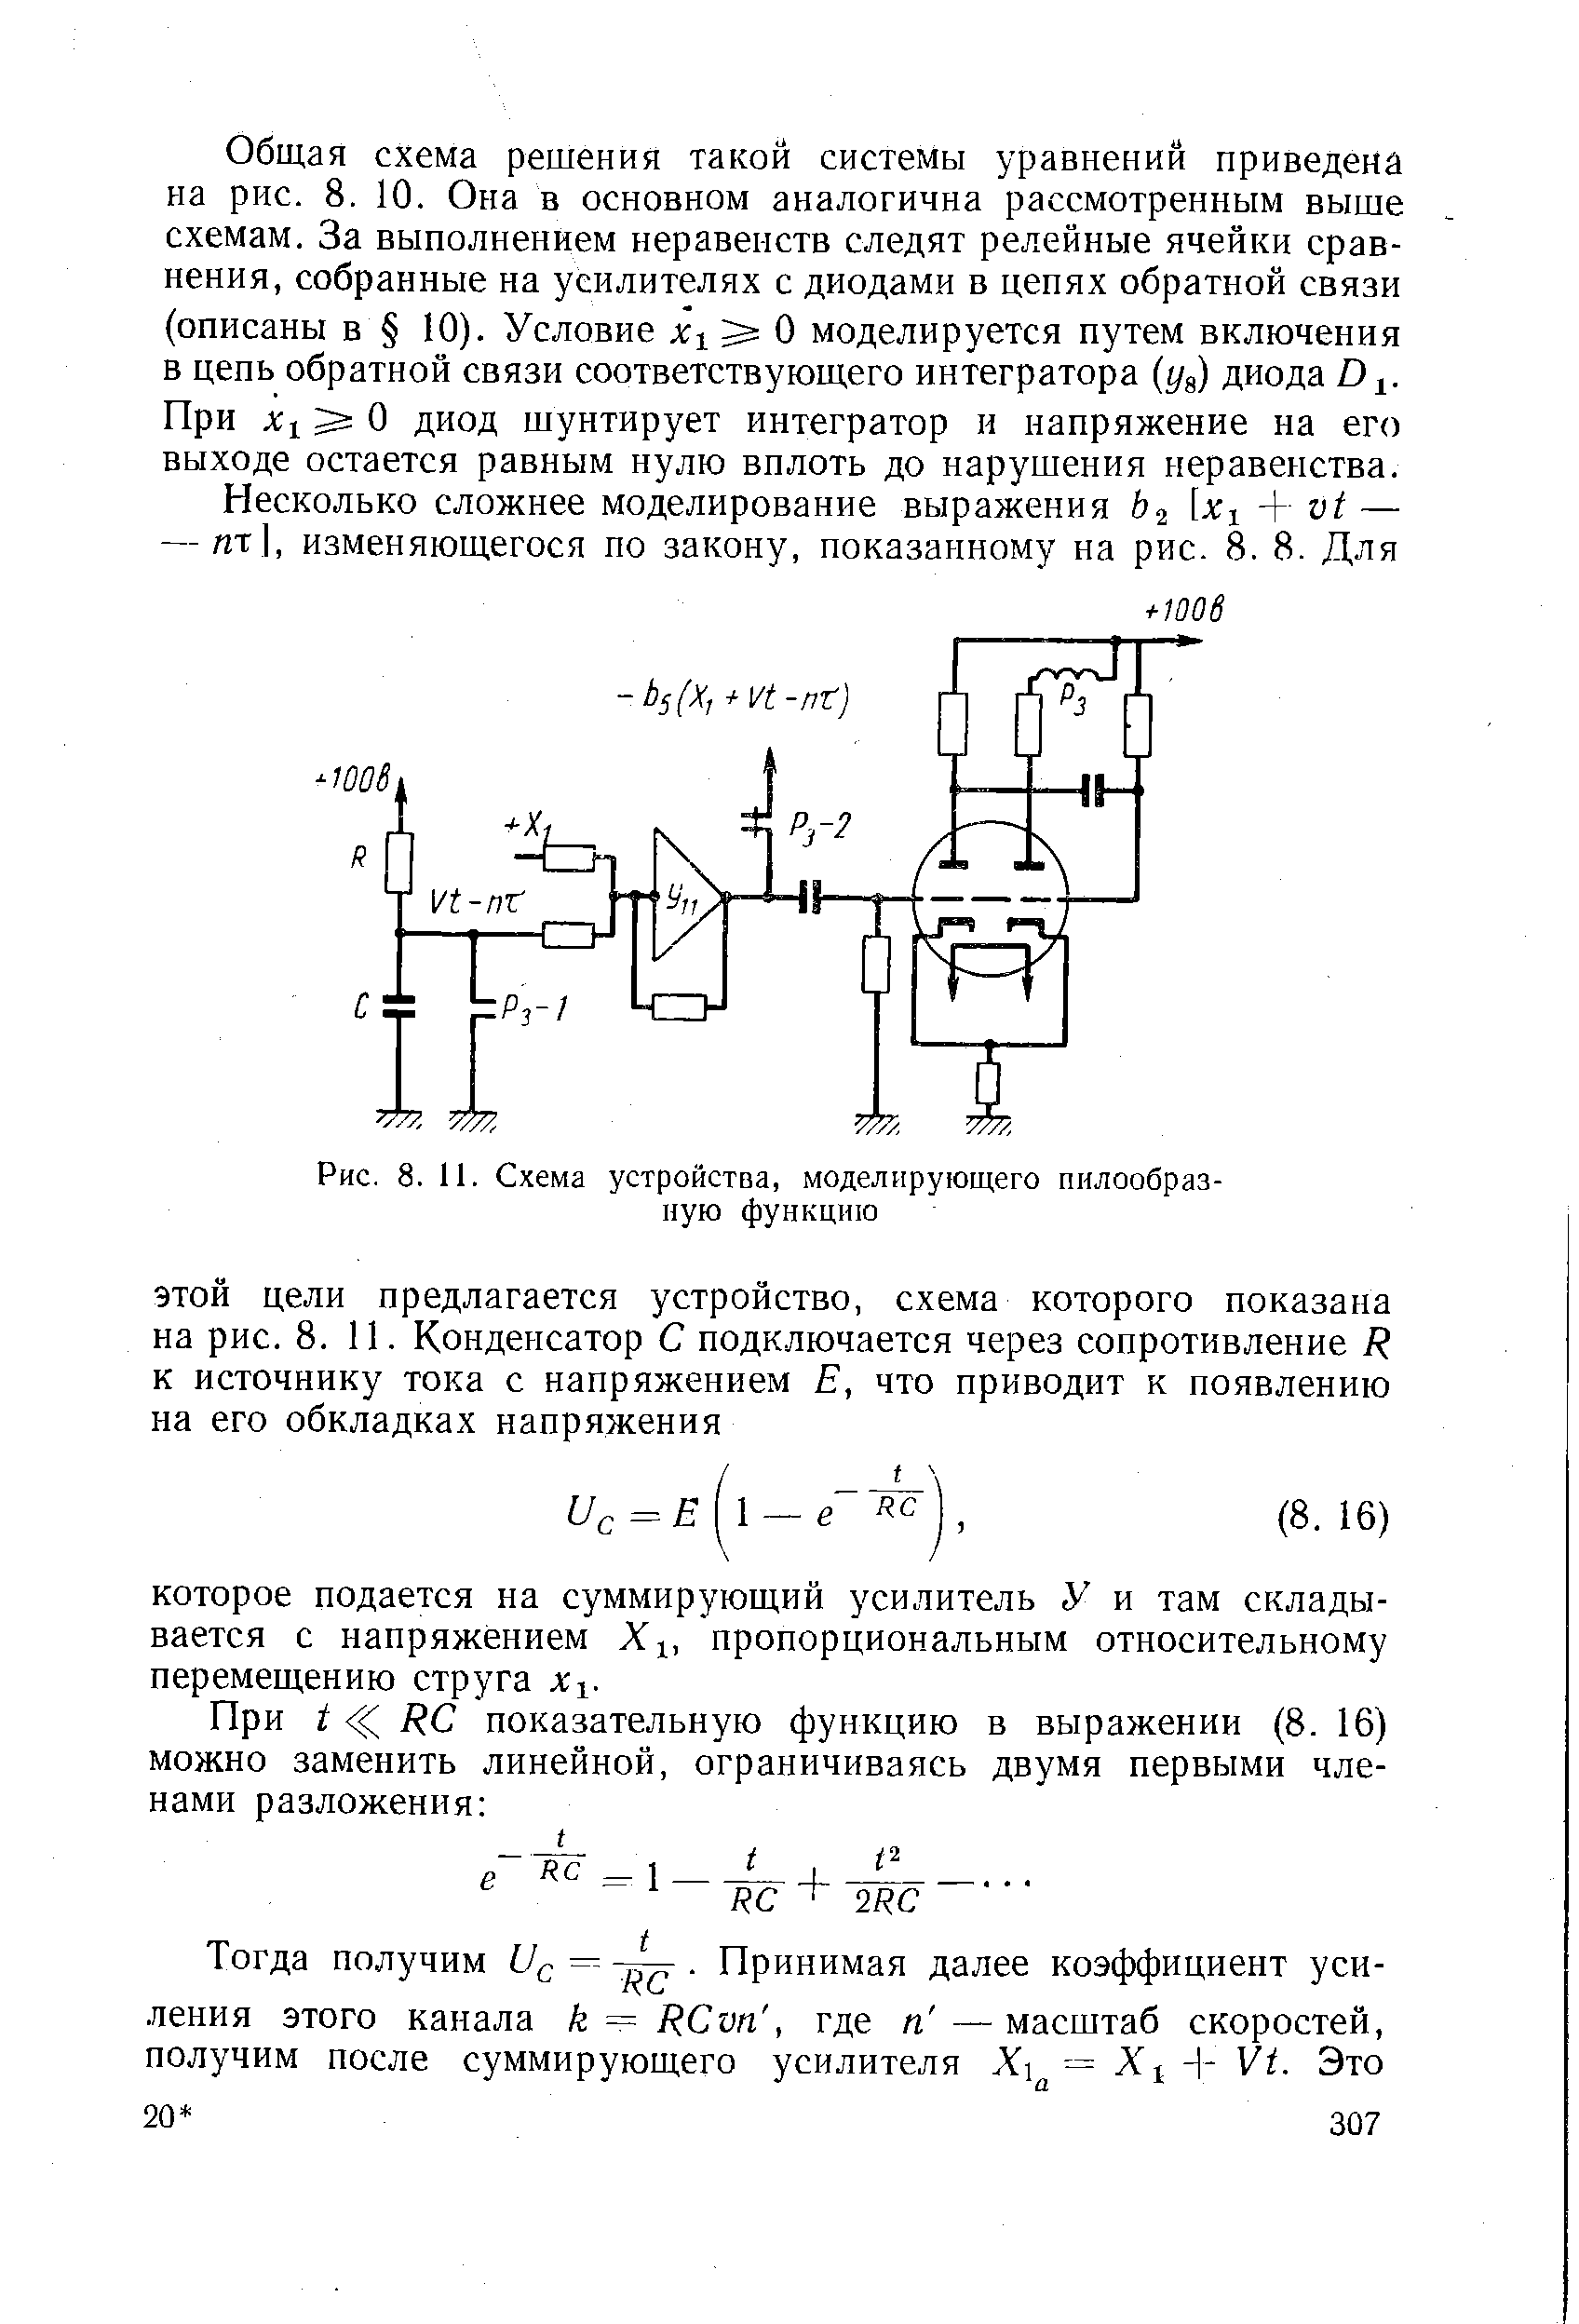 Рис. 8. И. Схема устройства, моделирующего пилообразную функцию
